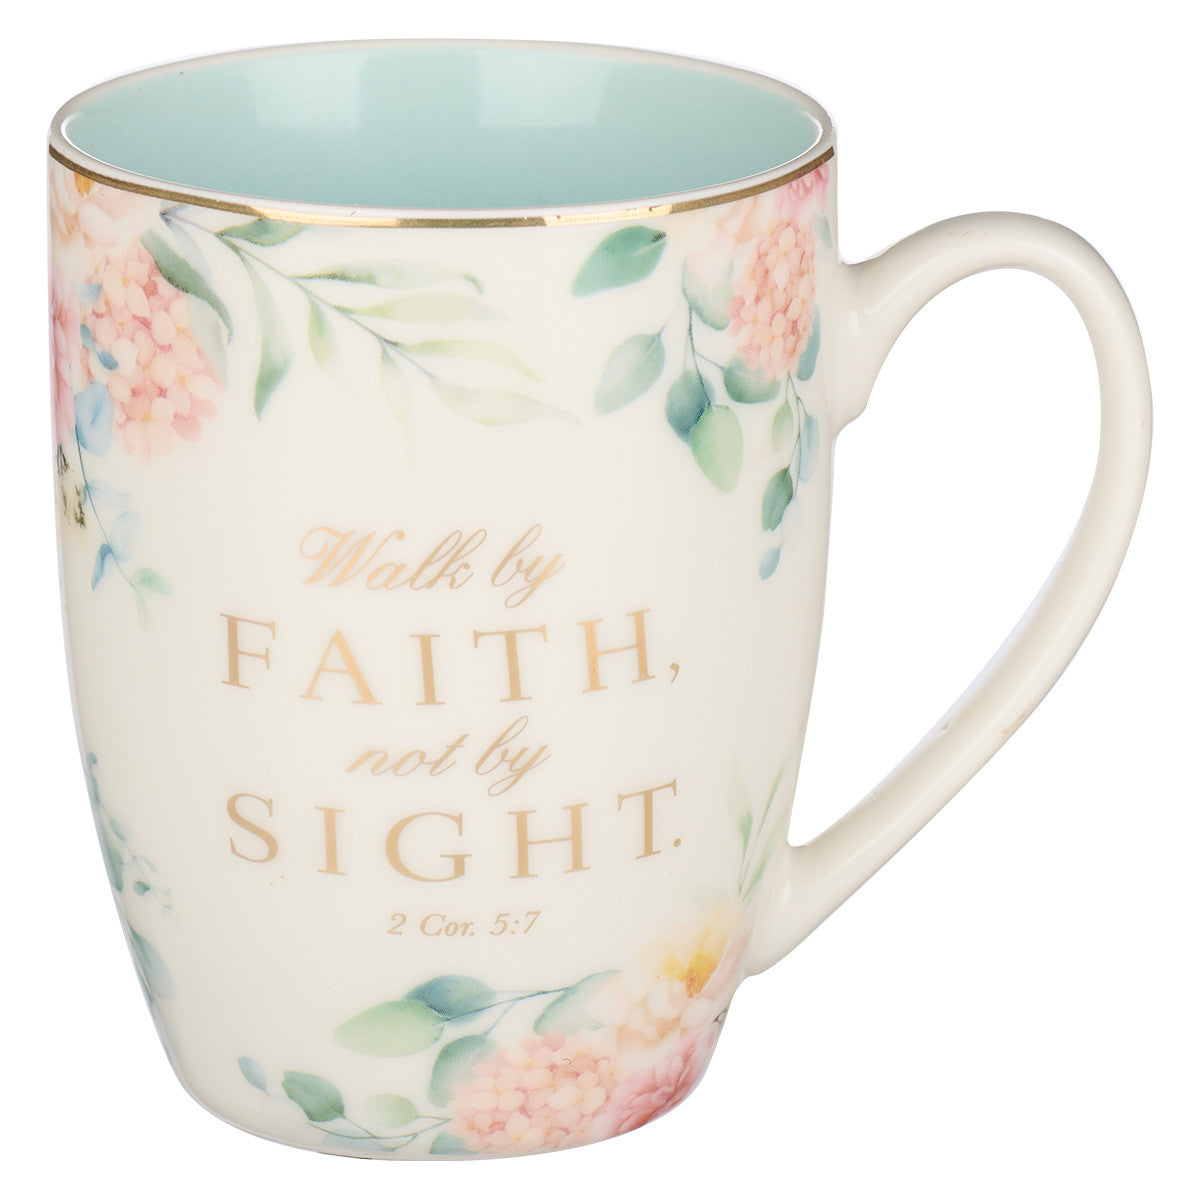 Walk by Faith Not by Sight Mug: 2 Cor. 5:7